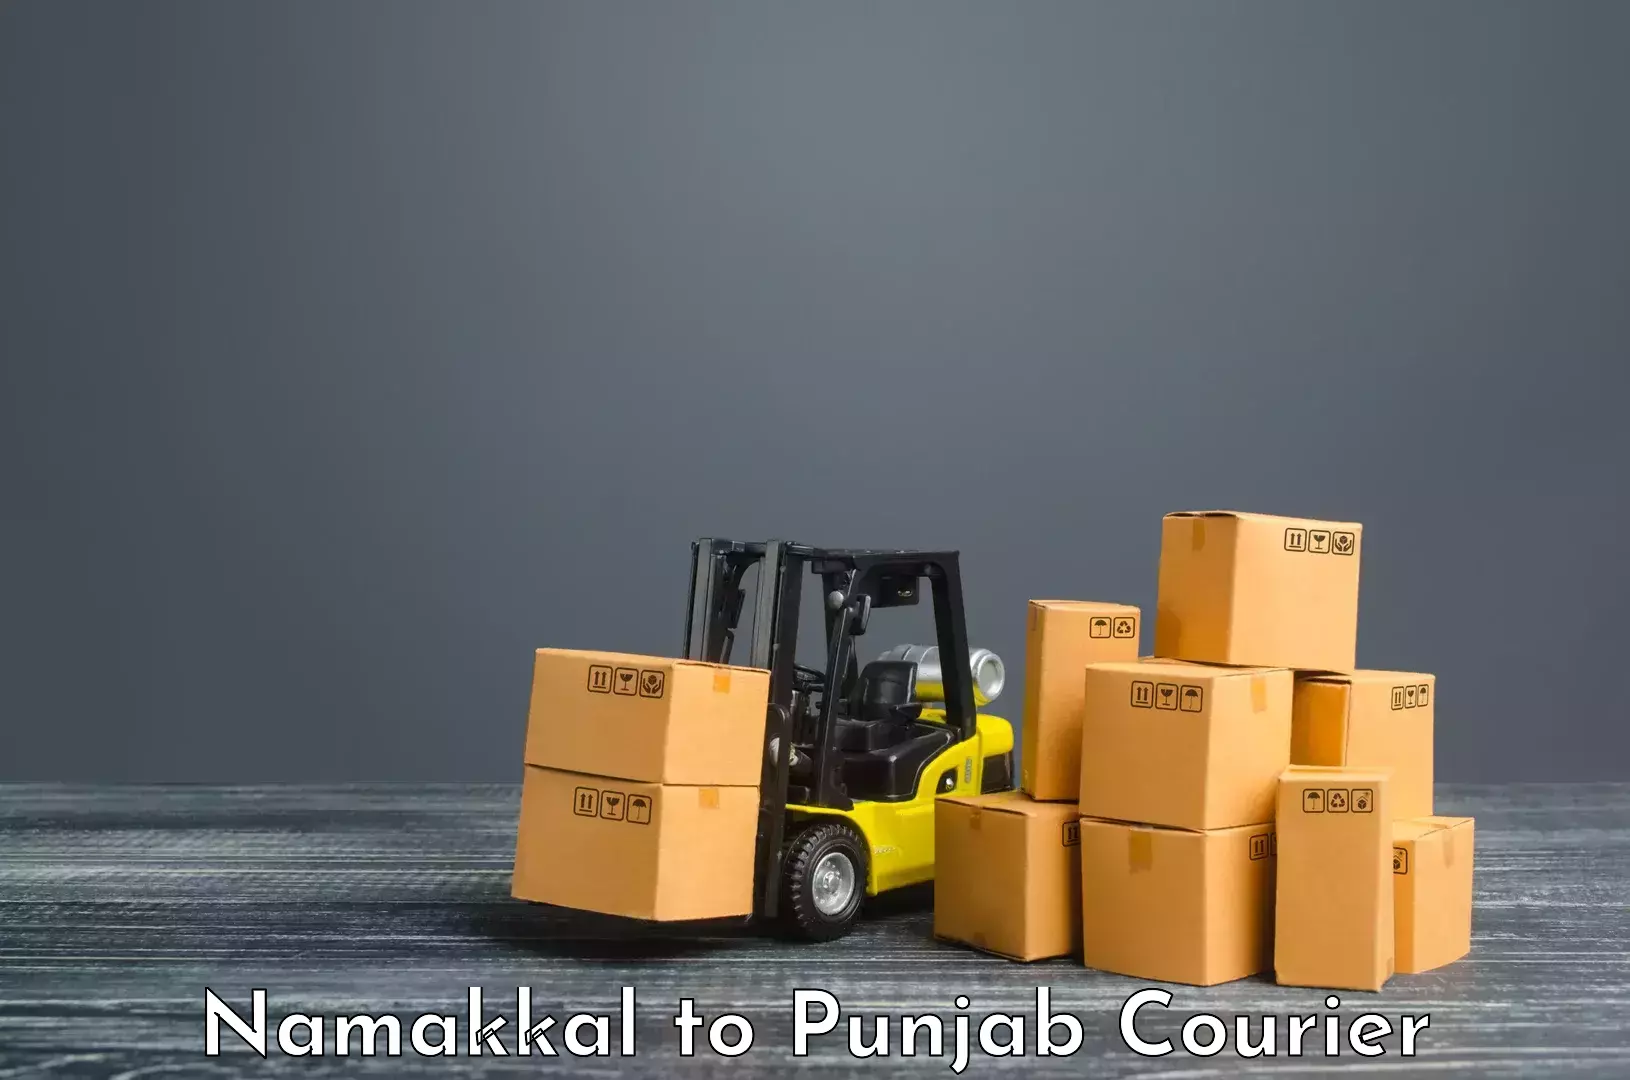 Premium courier services Namakkal to Phagwara